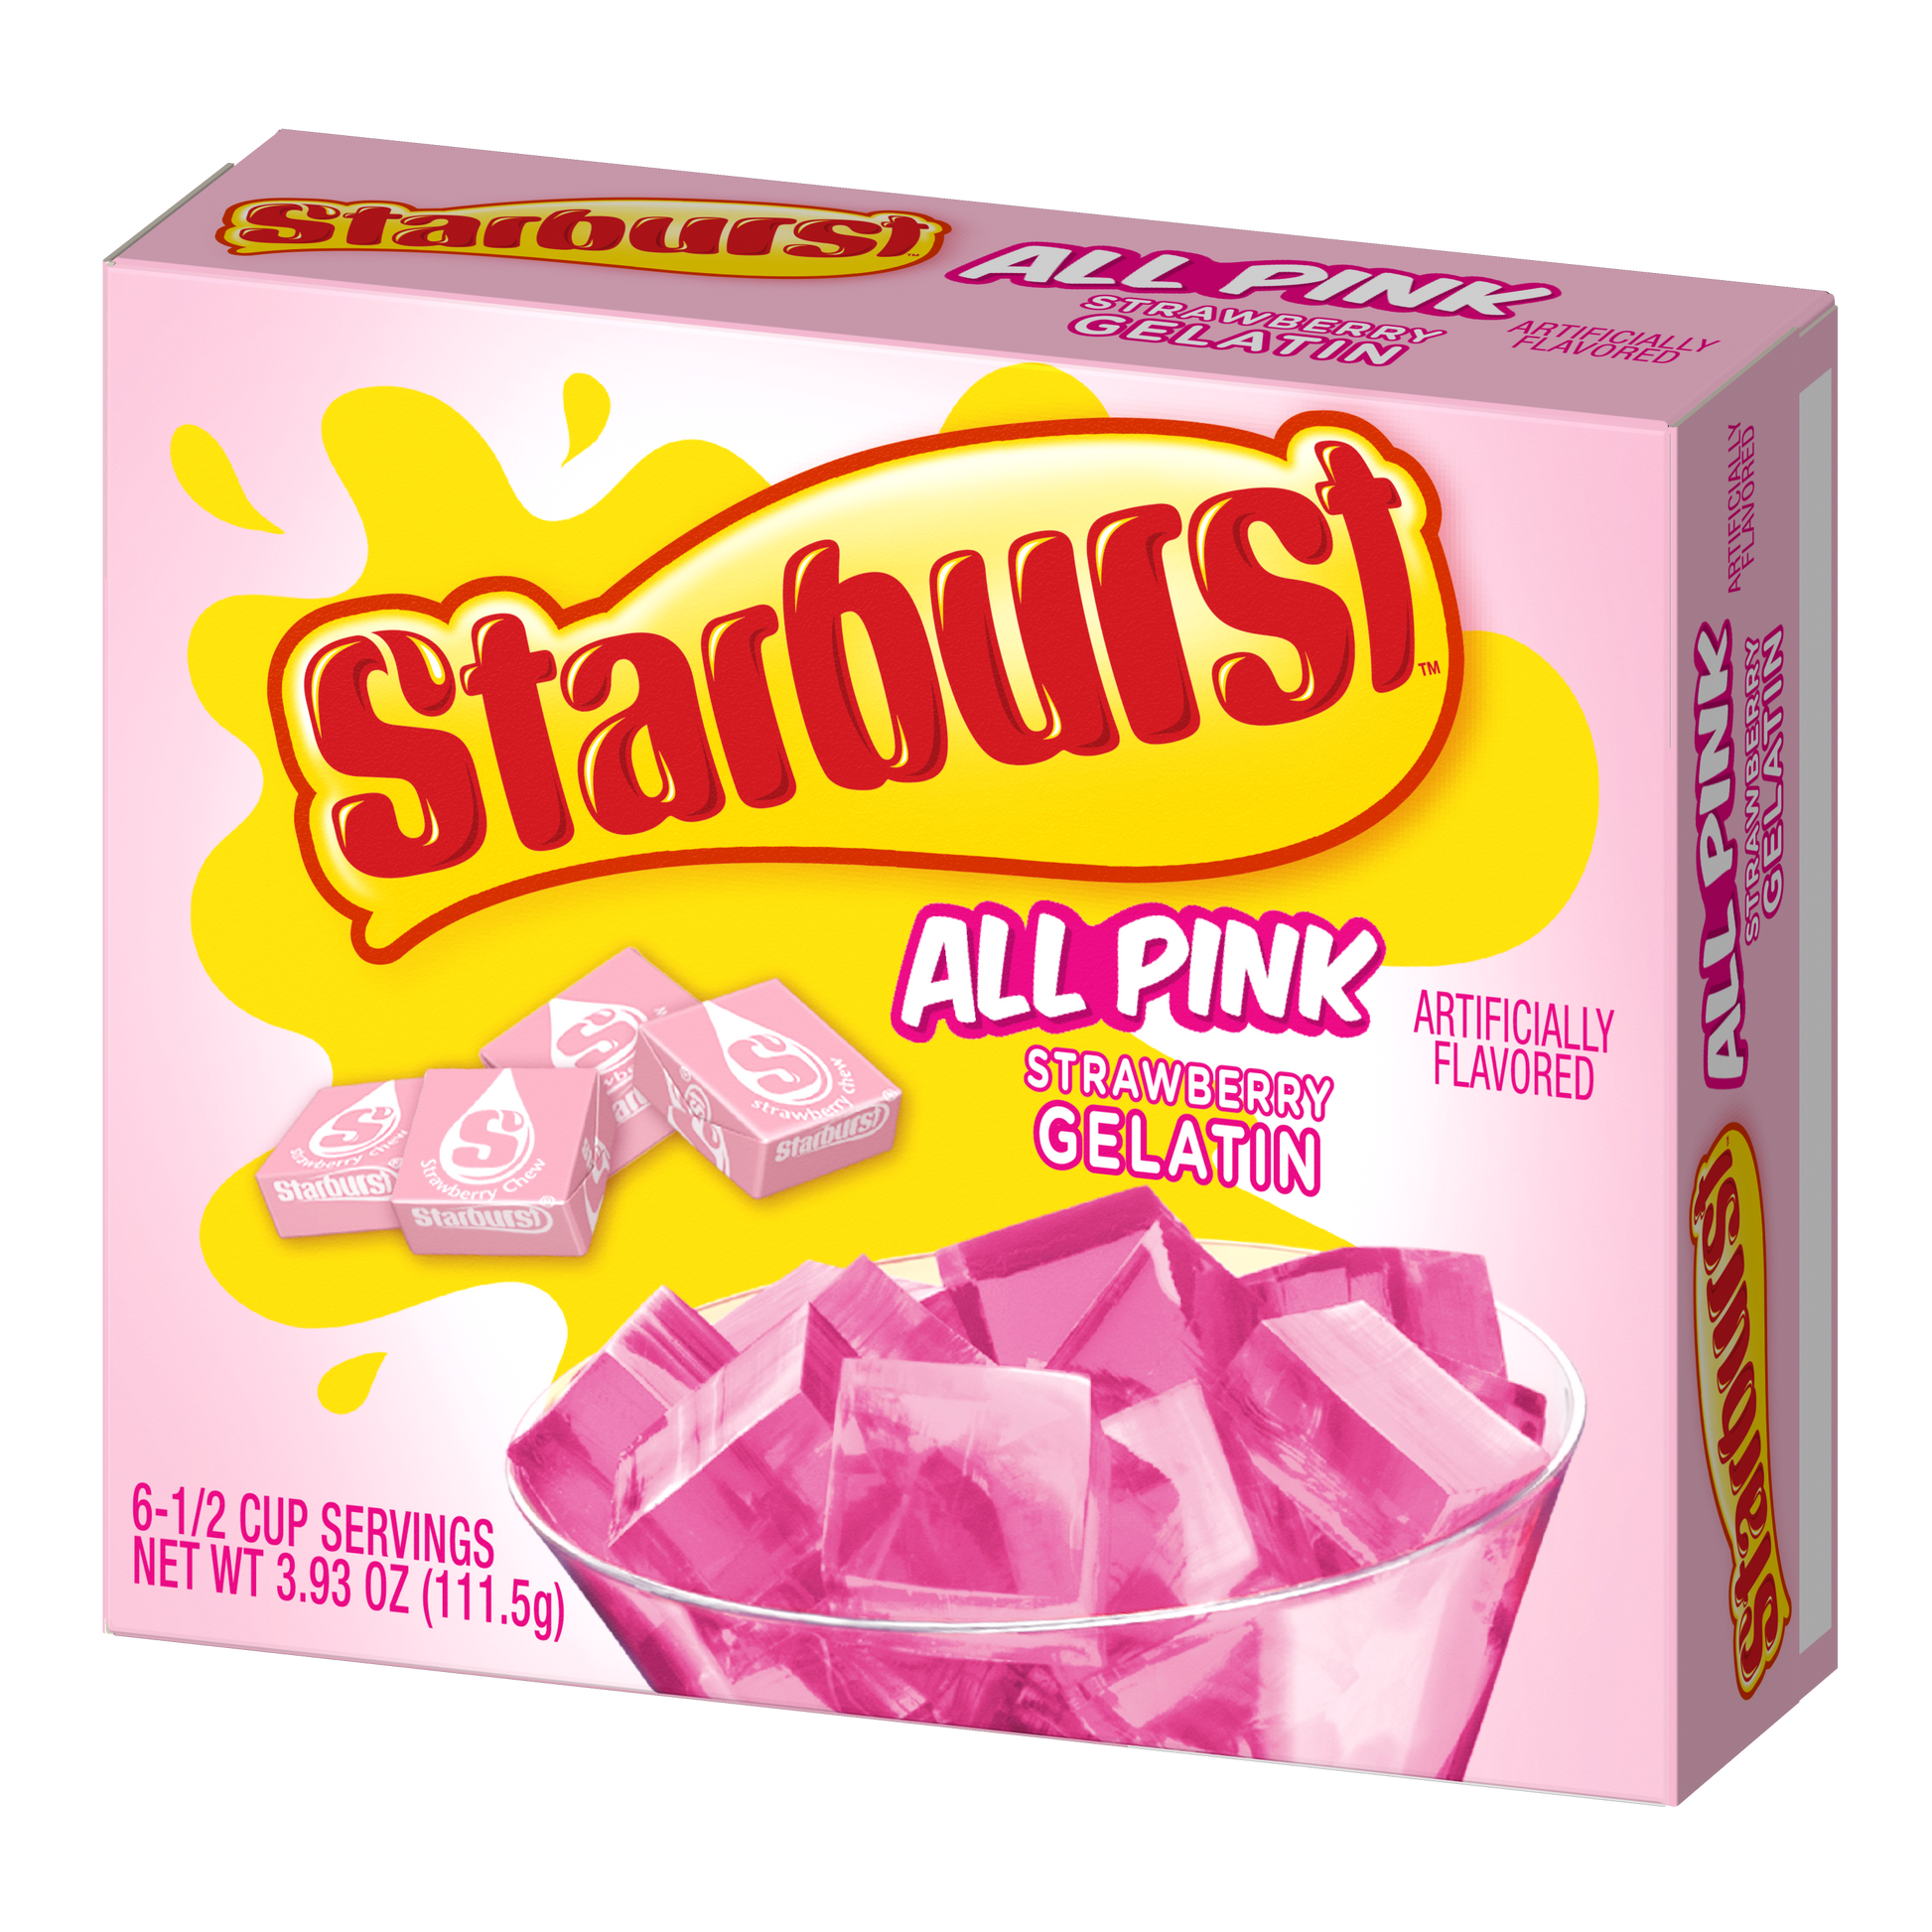 Starburst gelatin all pink packaging